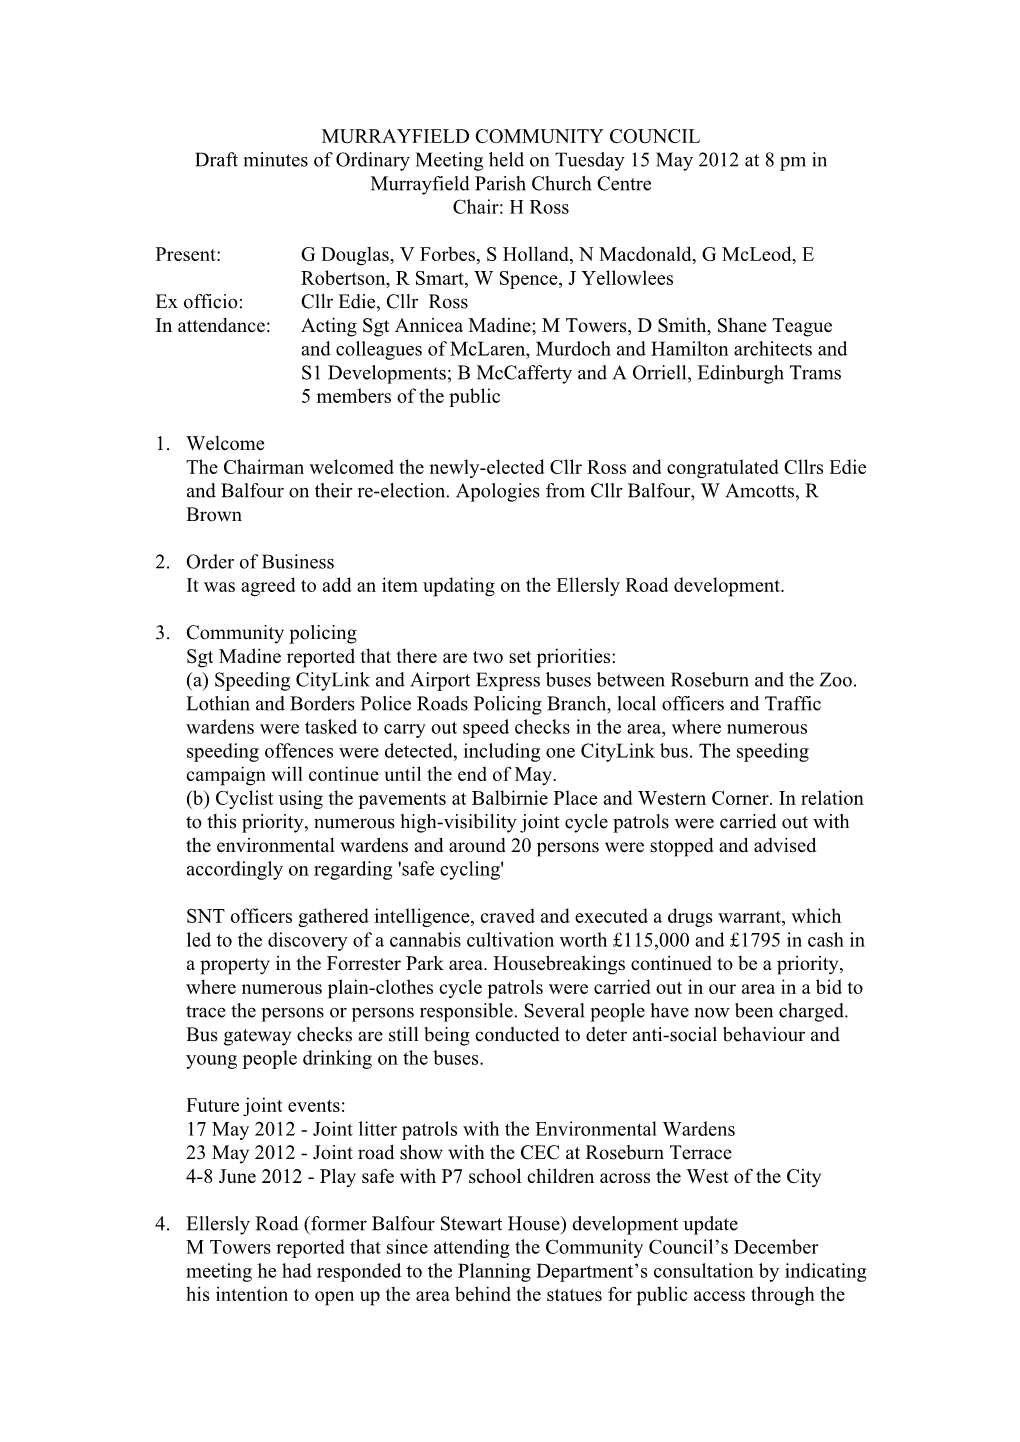 Minutes of Ordinary Meeting 15 May 2012[Draft]